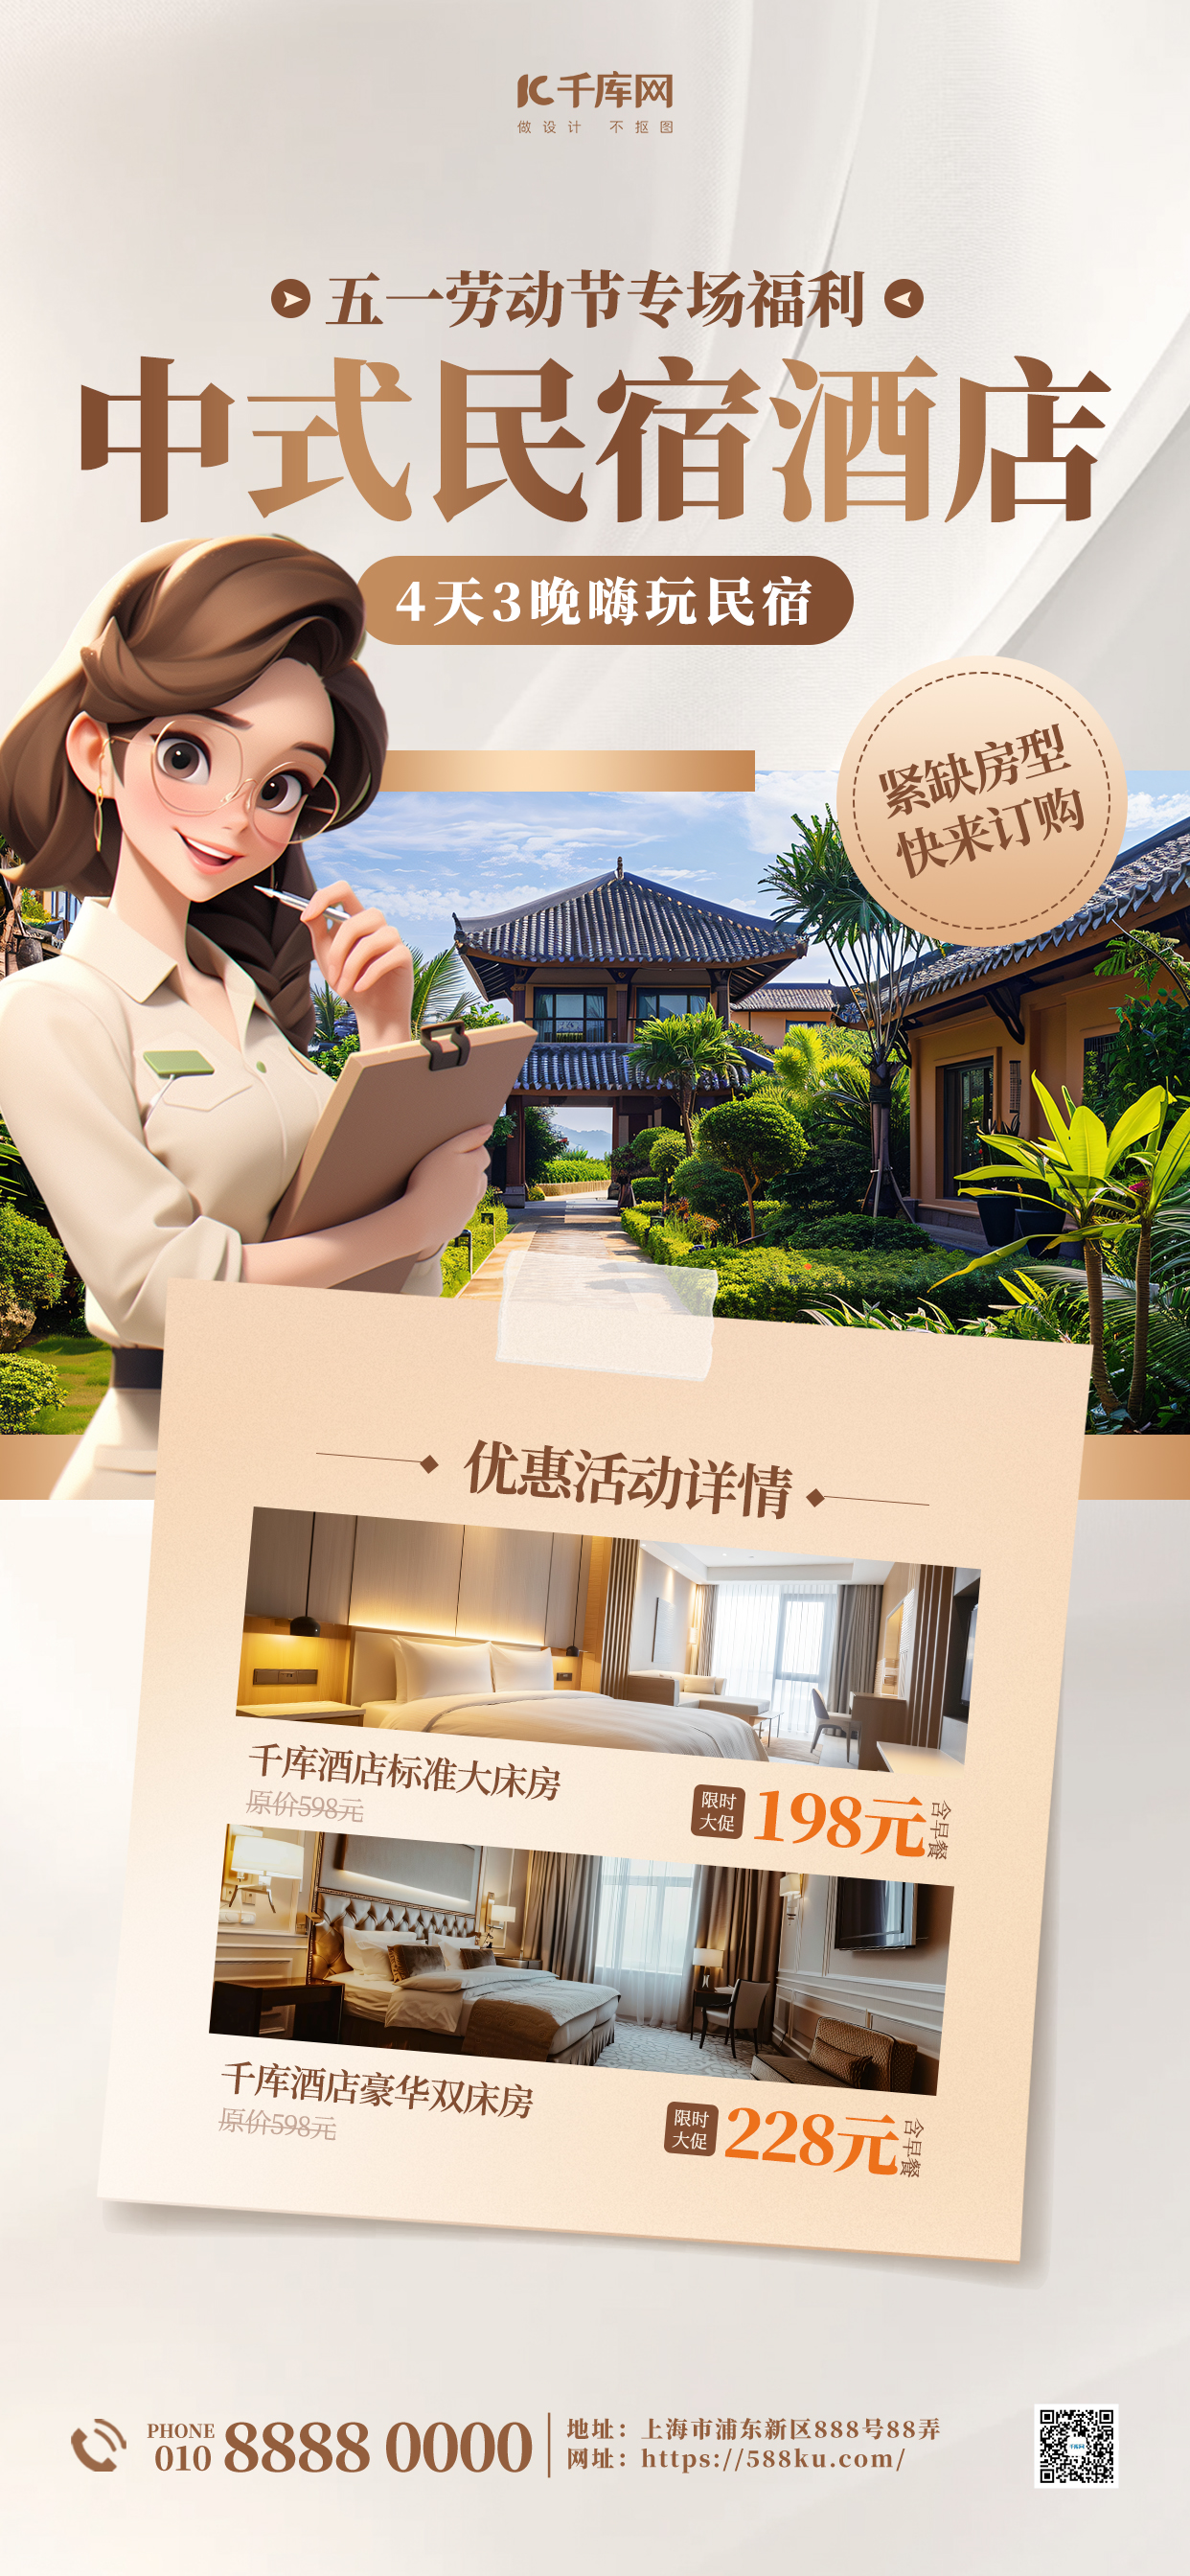 五一 劳动节酒店民宿棕色高端大气海报海报制作图片